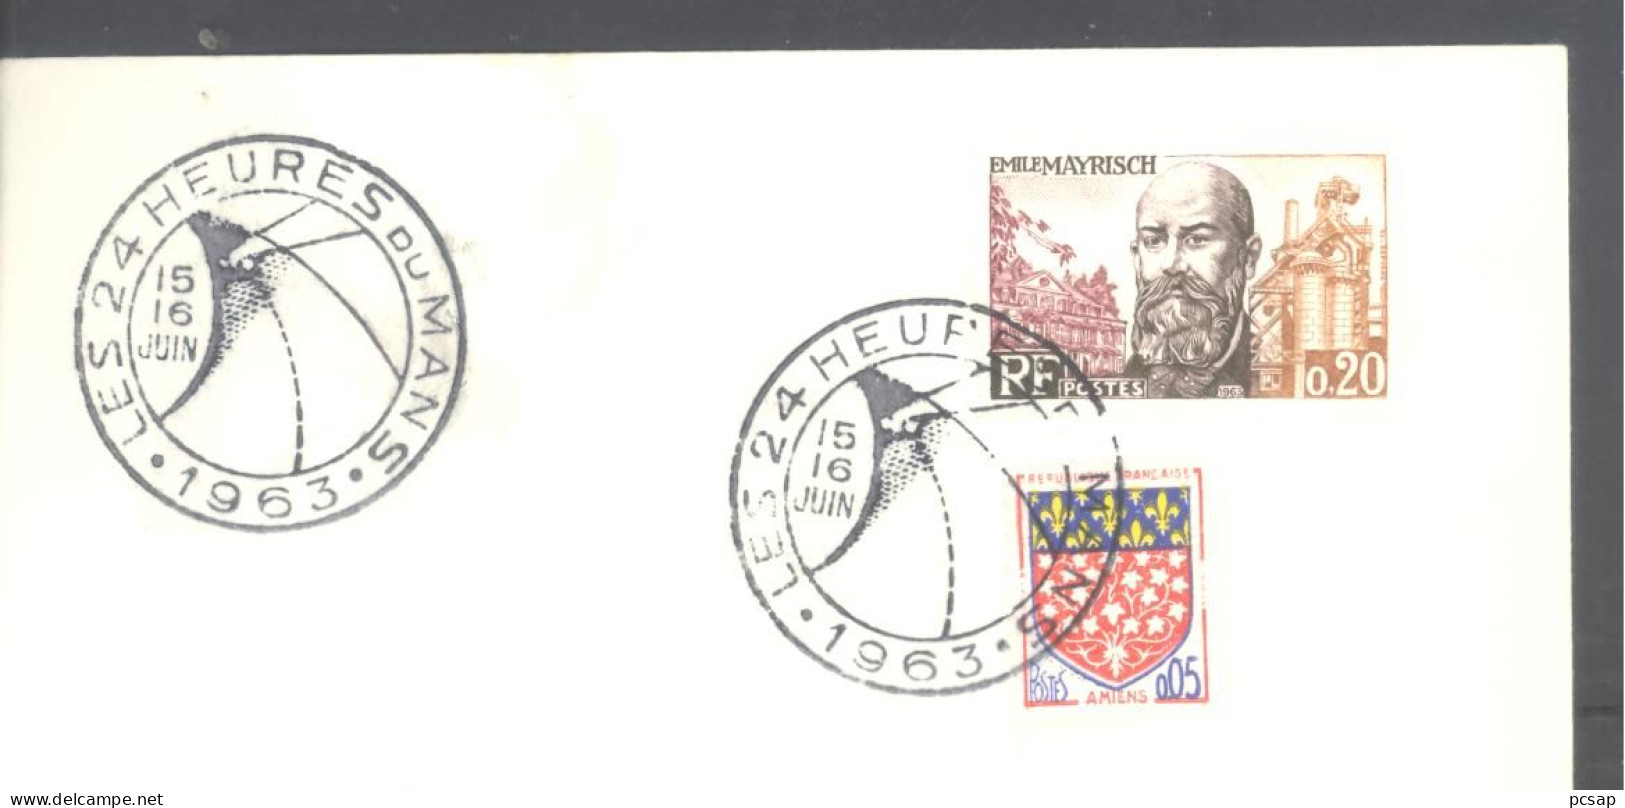 Les 24 Heures Du Mans - 15 Et 16 Juin 1963 (sur Enveloppe Entière) - Matasellos Conmemorativos